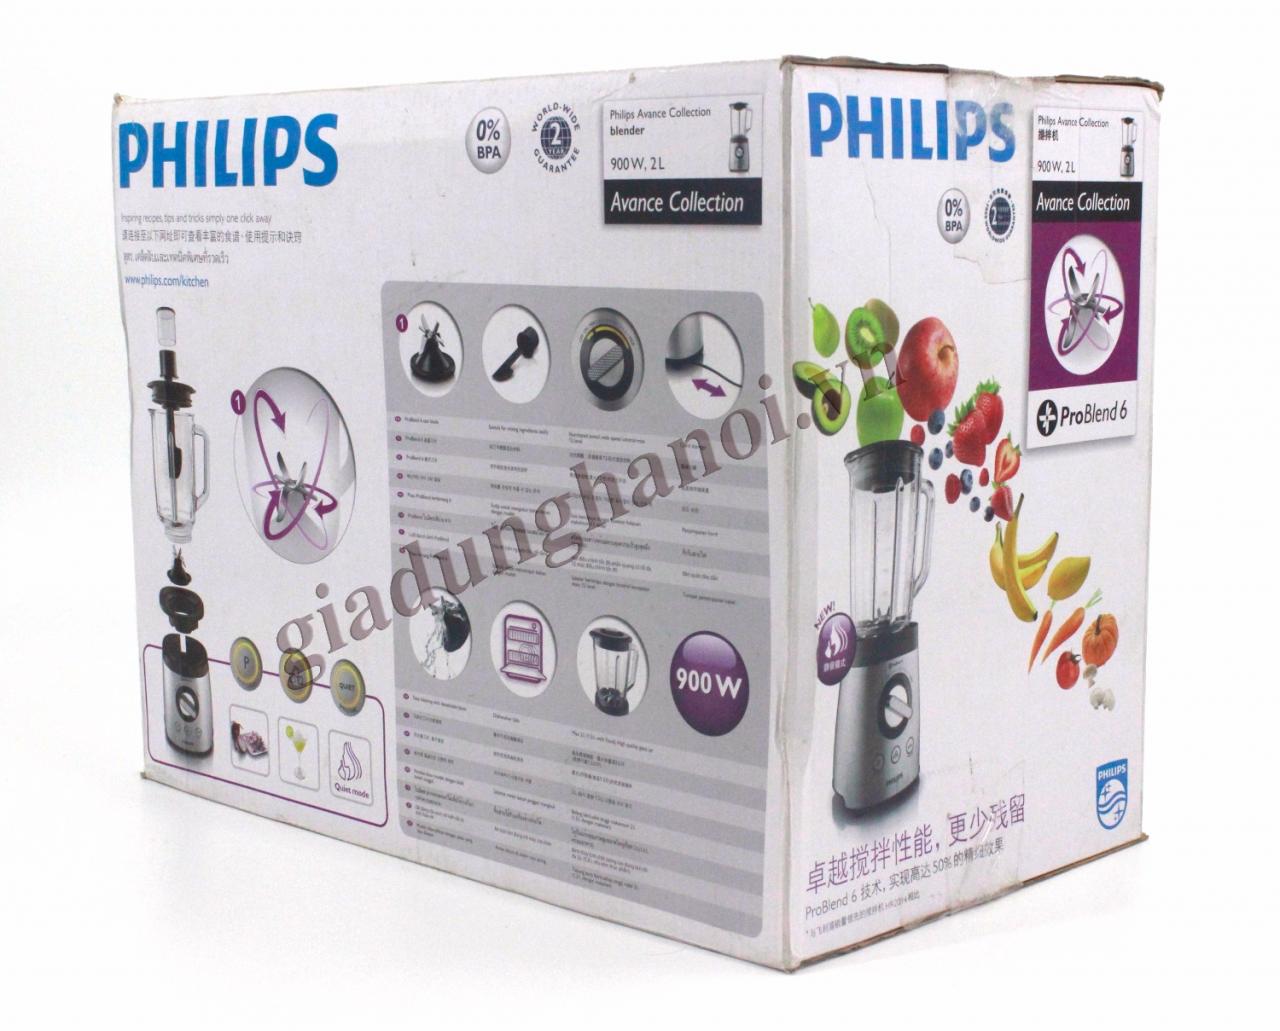 Máy xay sinh tố Philips HR2195